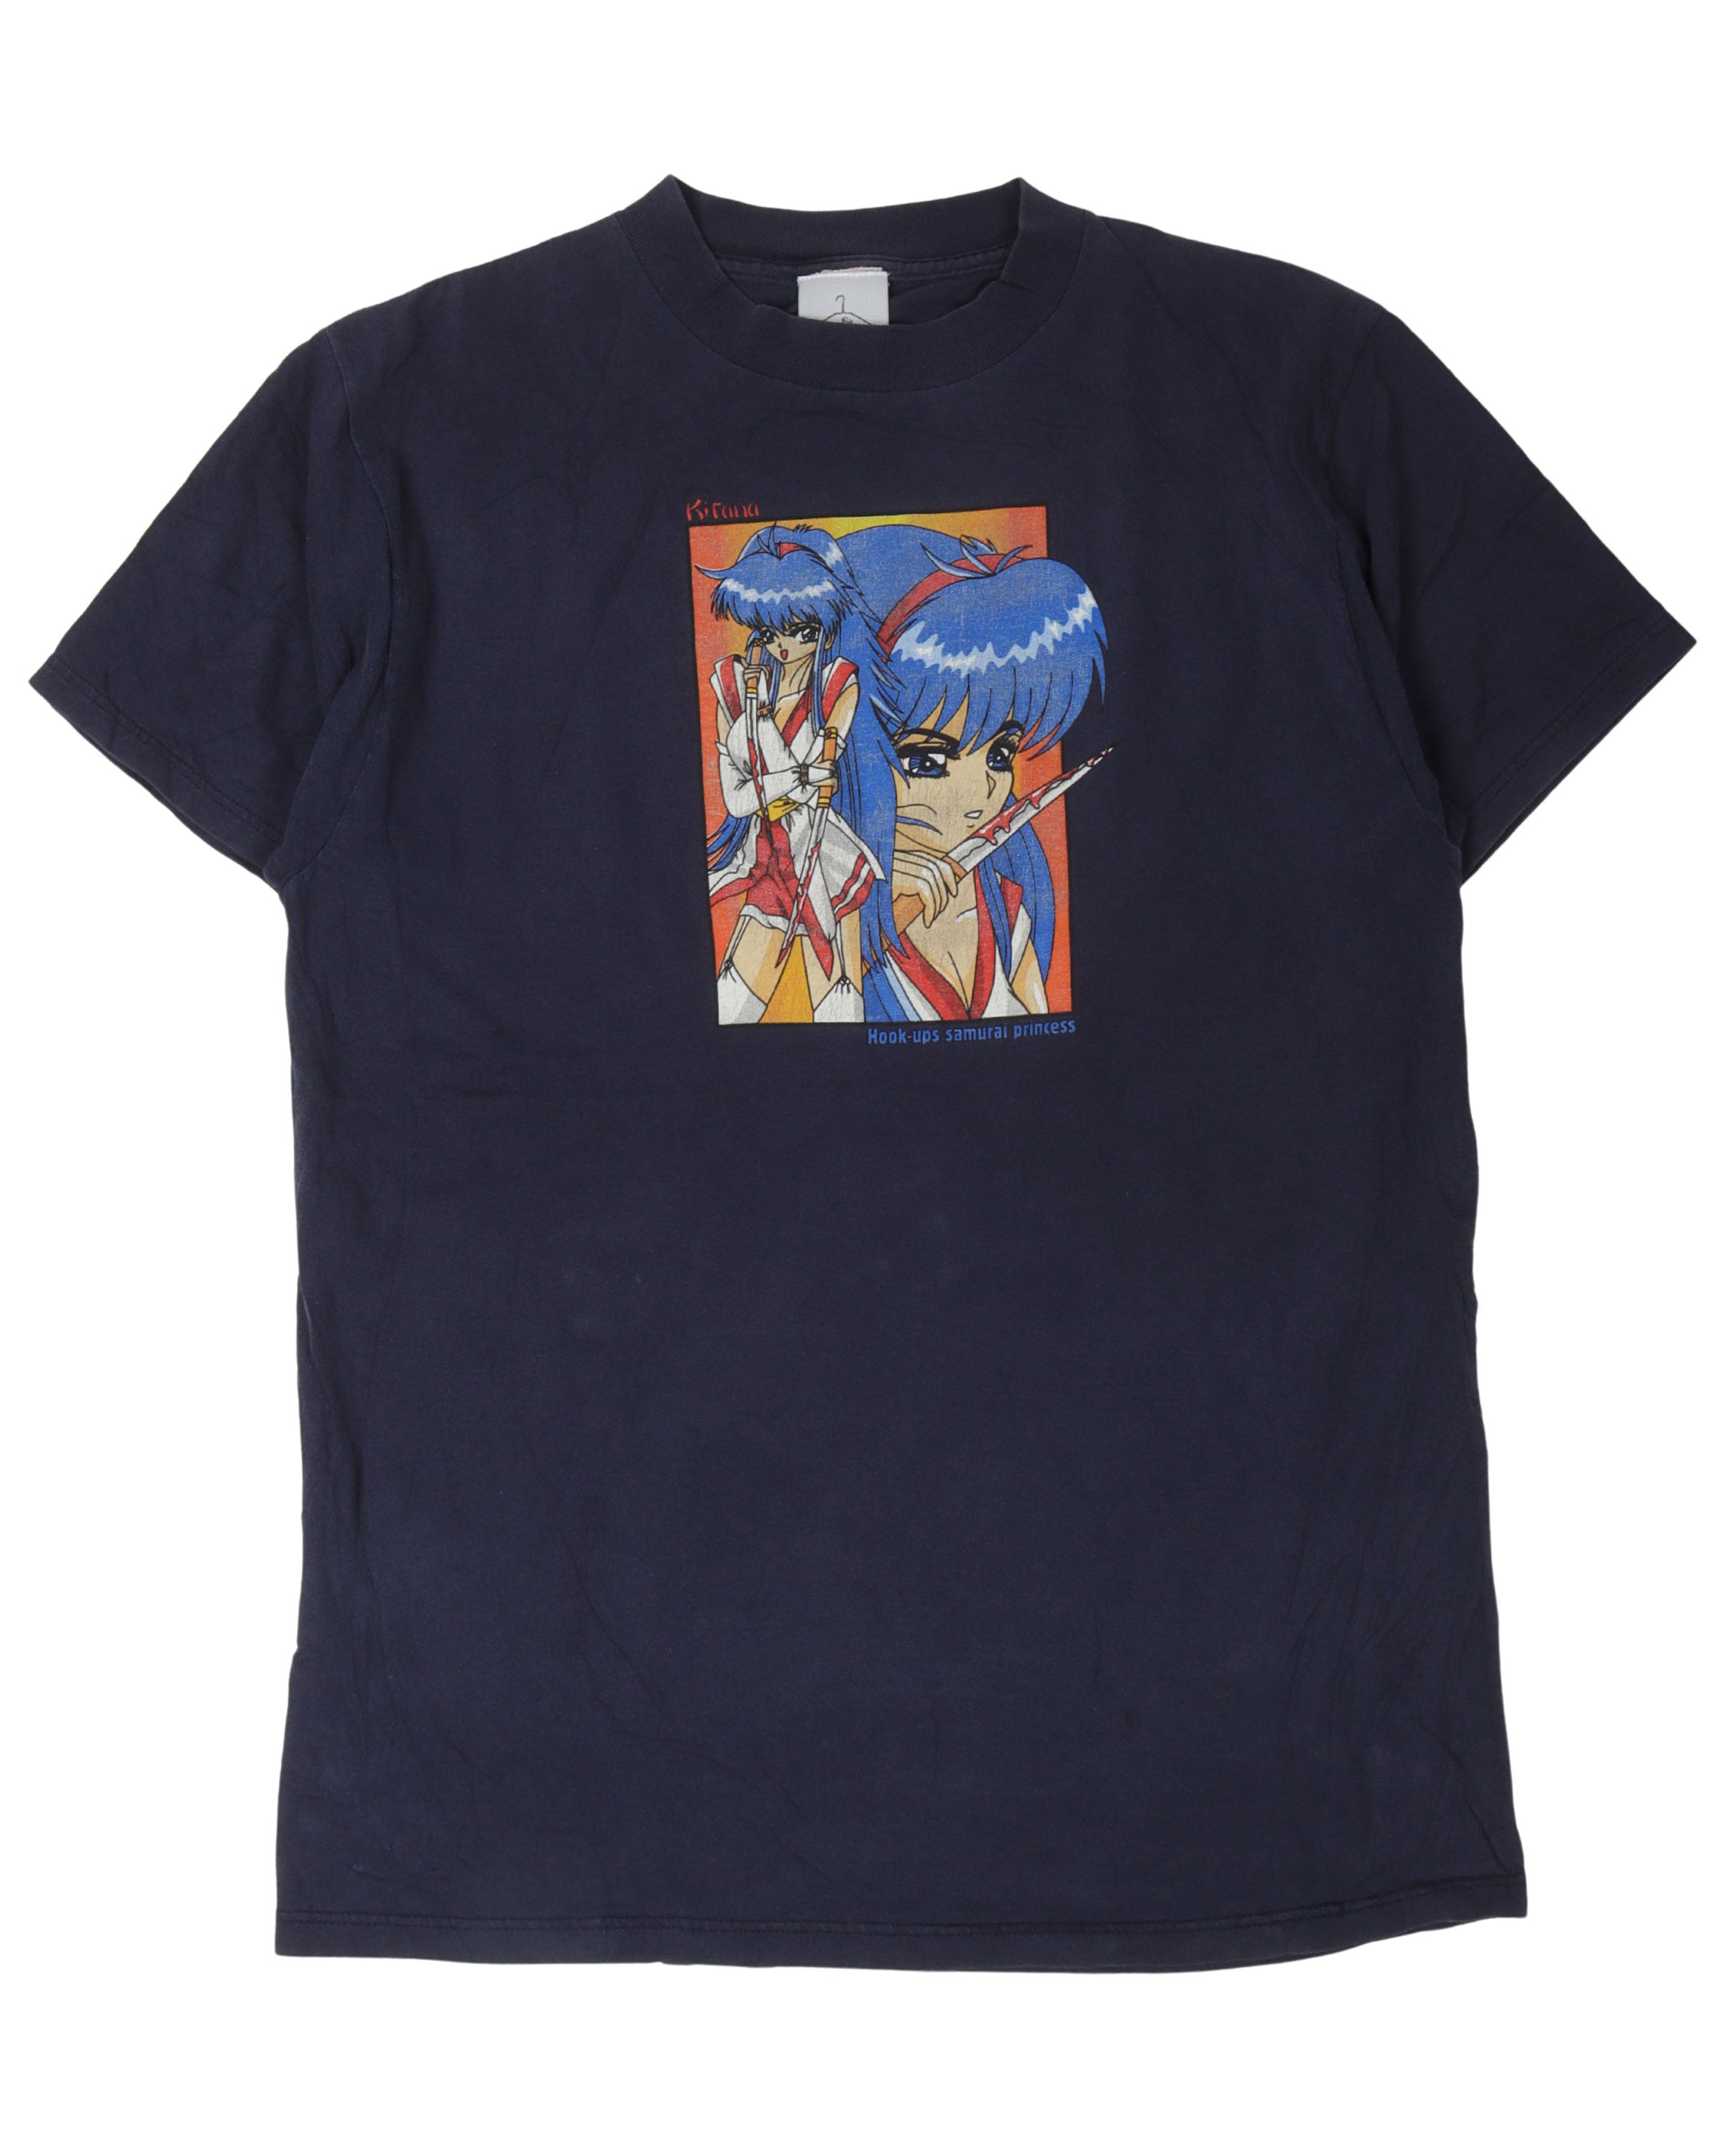 Hook Ups Kitana Samurai Princess T-Shirt